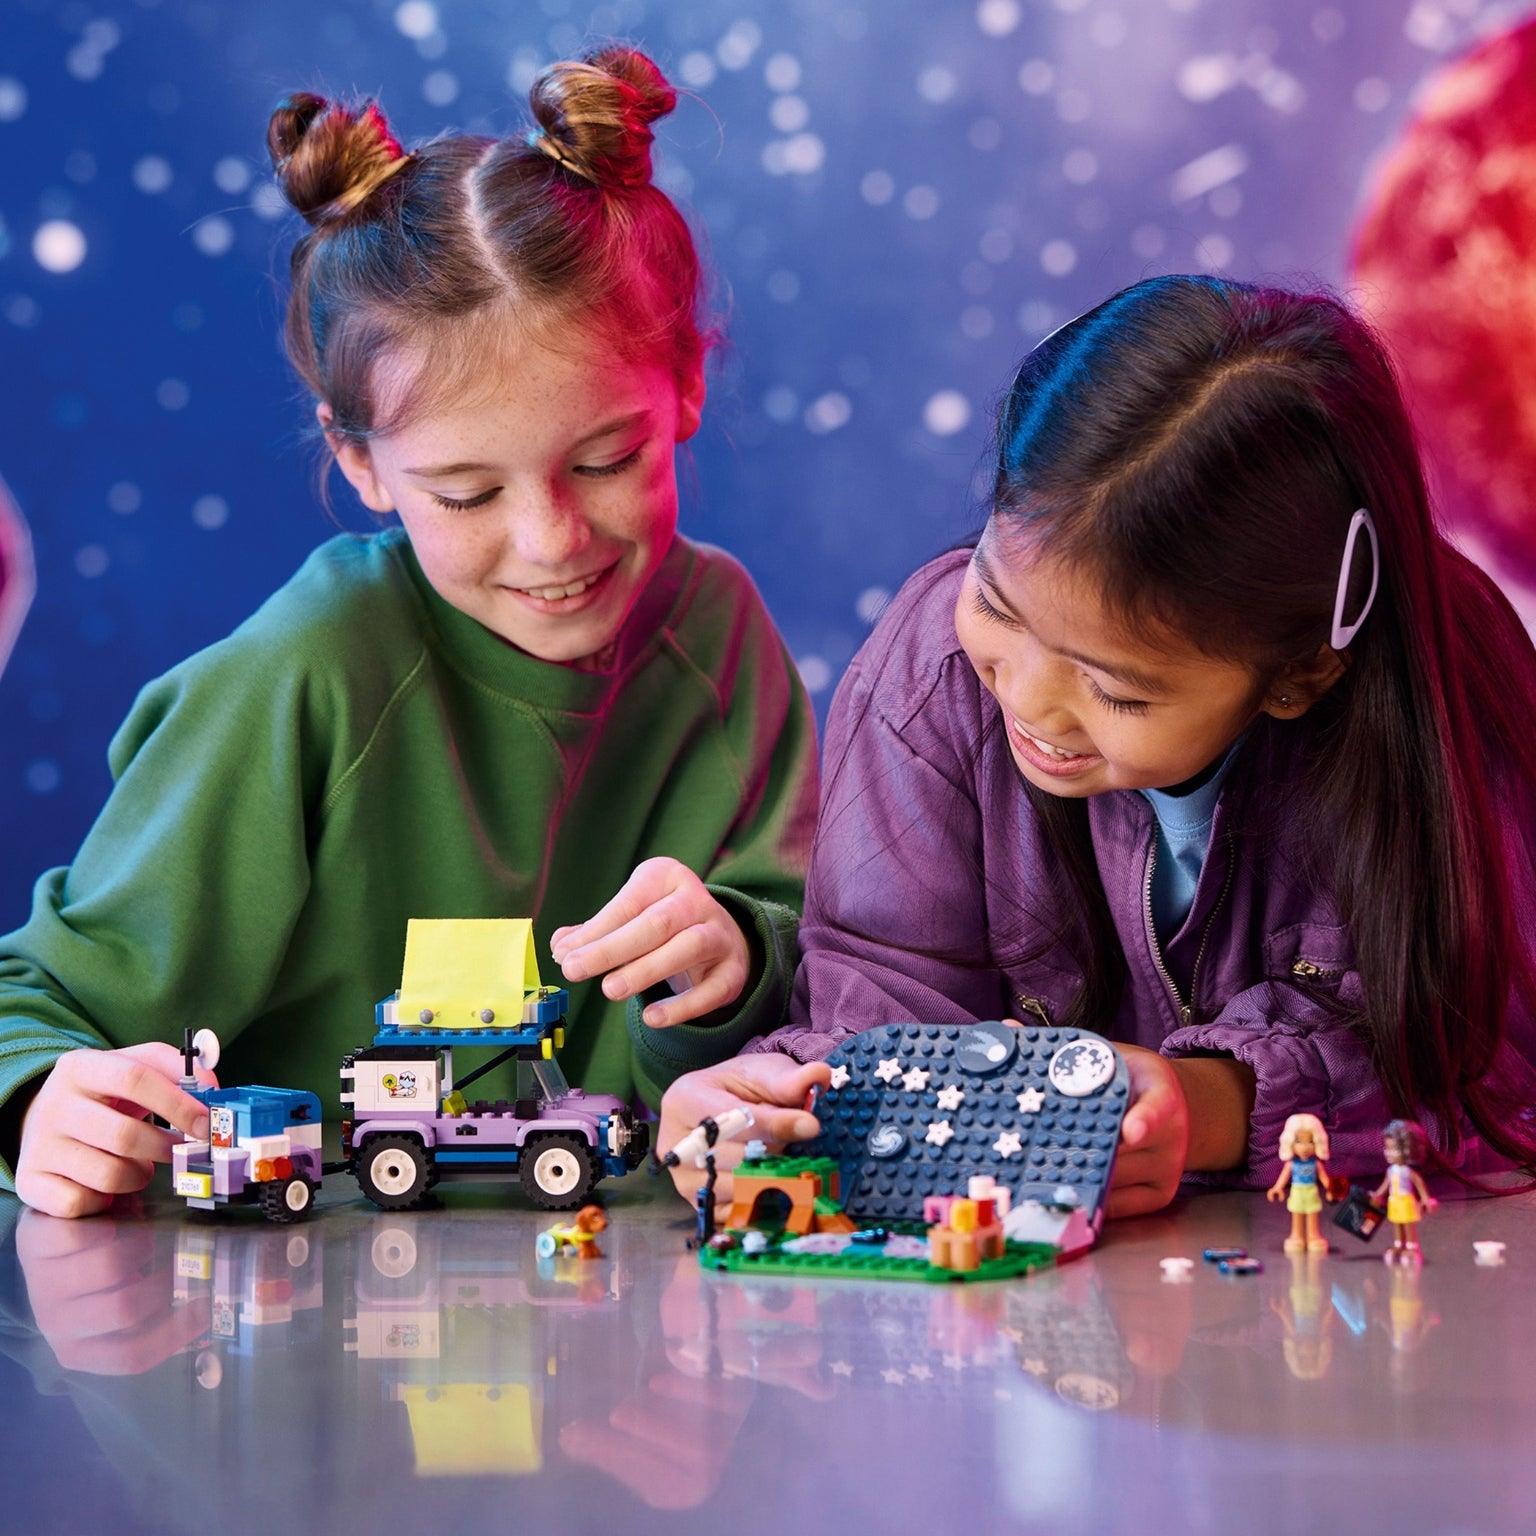 Lego Friends Veículo de Acampamento e Observação Astronómica - Brincatoys